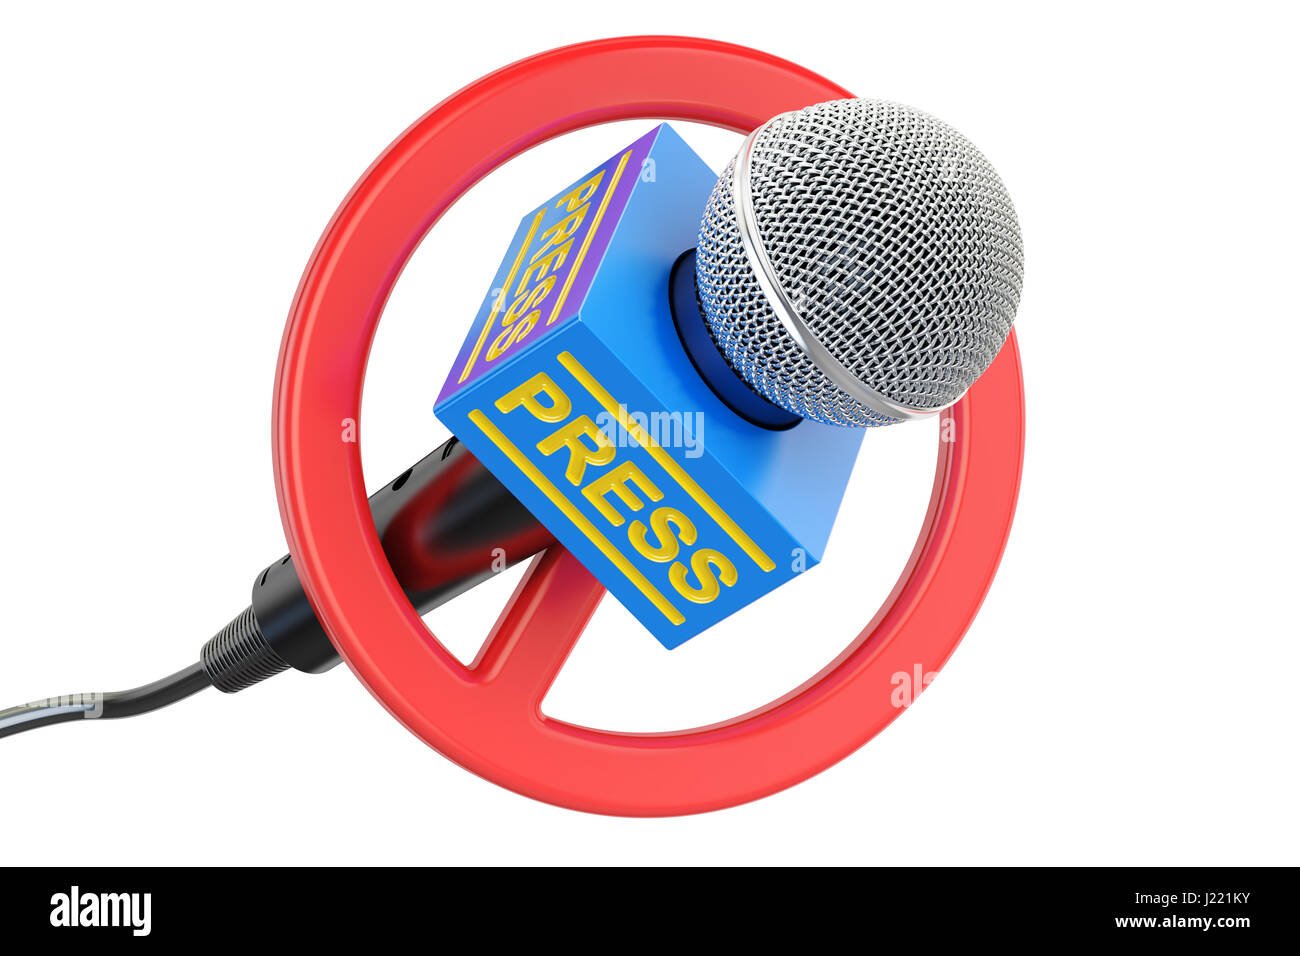 Presse-Verbot-Konzept. Mikrofon mit verbotenen Symbol, 3D-Rendering  isolierten auf weißen Hintergrund Stockfotografie - Alamy